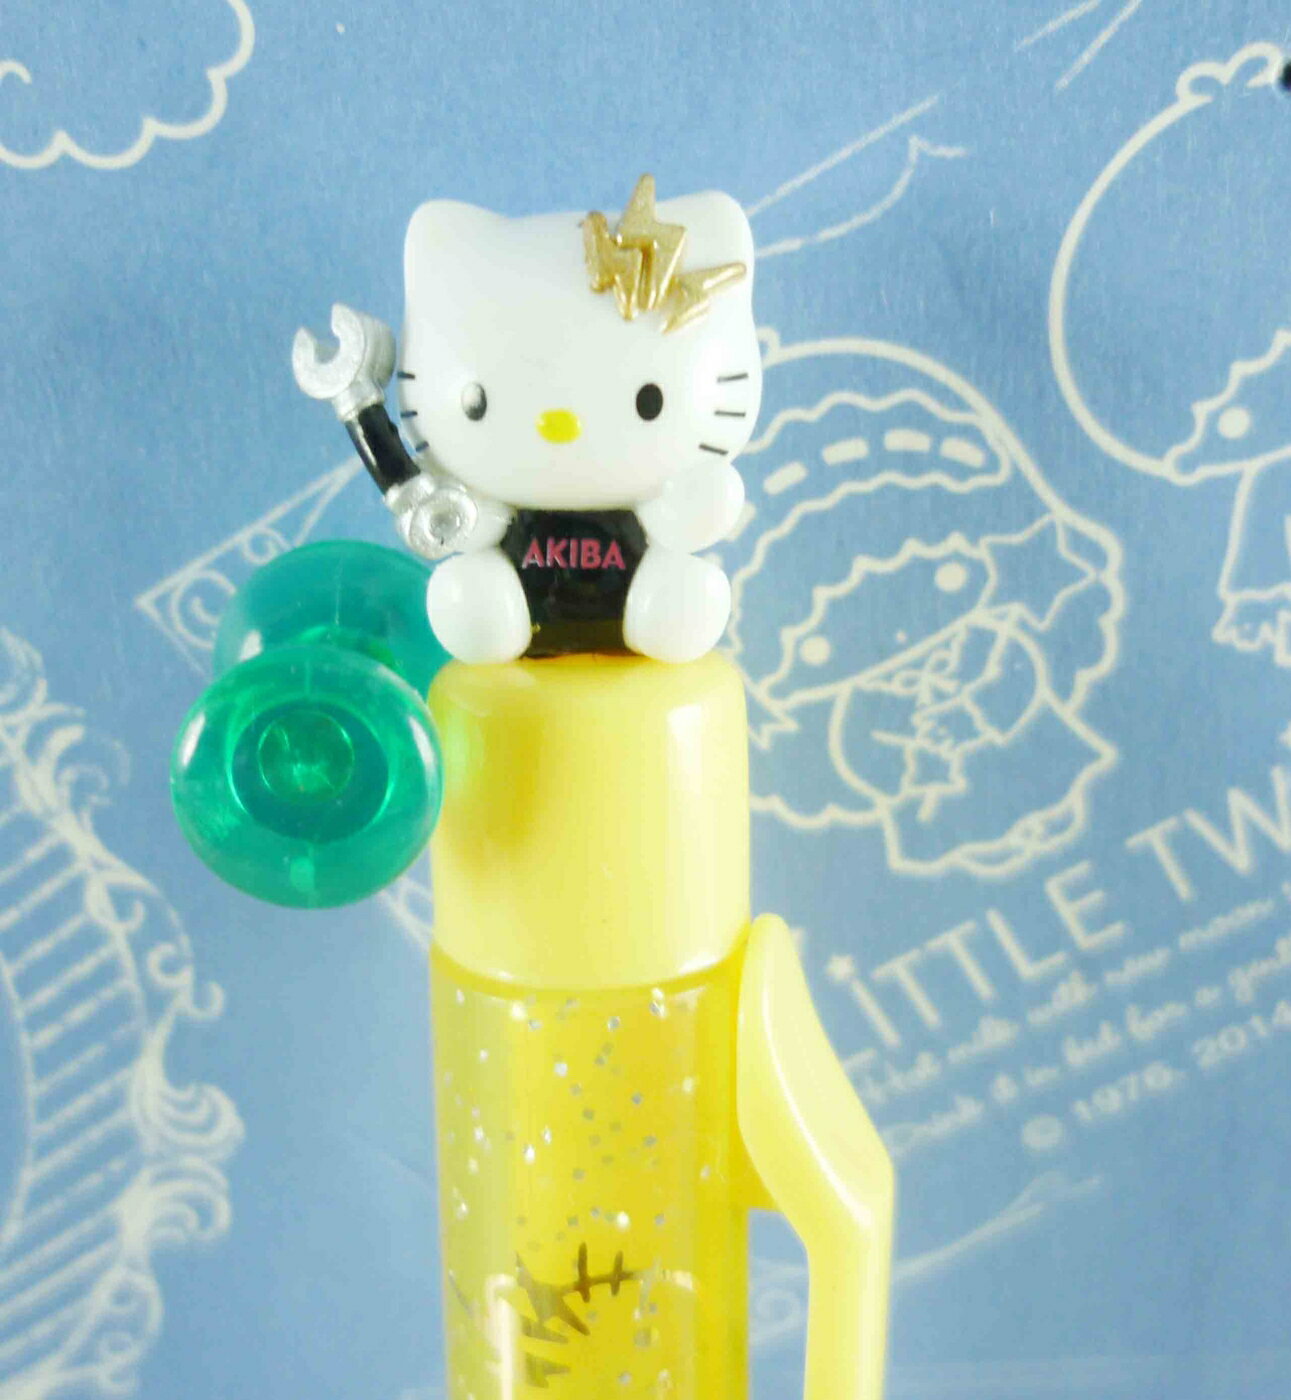 【震撼精品百貨】Hello Kitty 凱蒂貓 KITTY限定版原子筆-秋葉原 震撼日式精品百貨